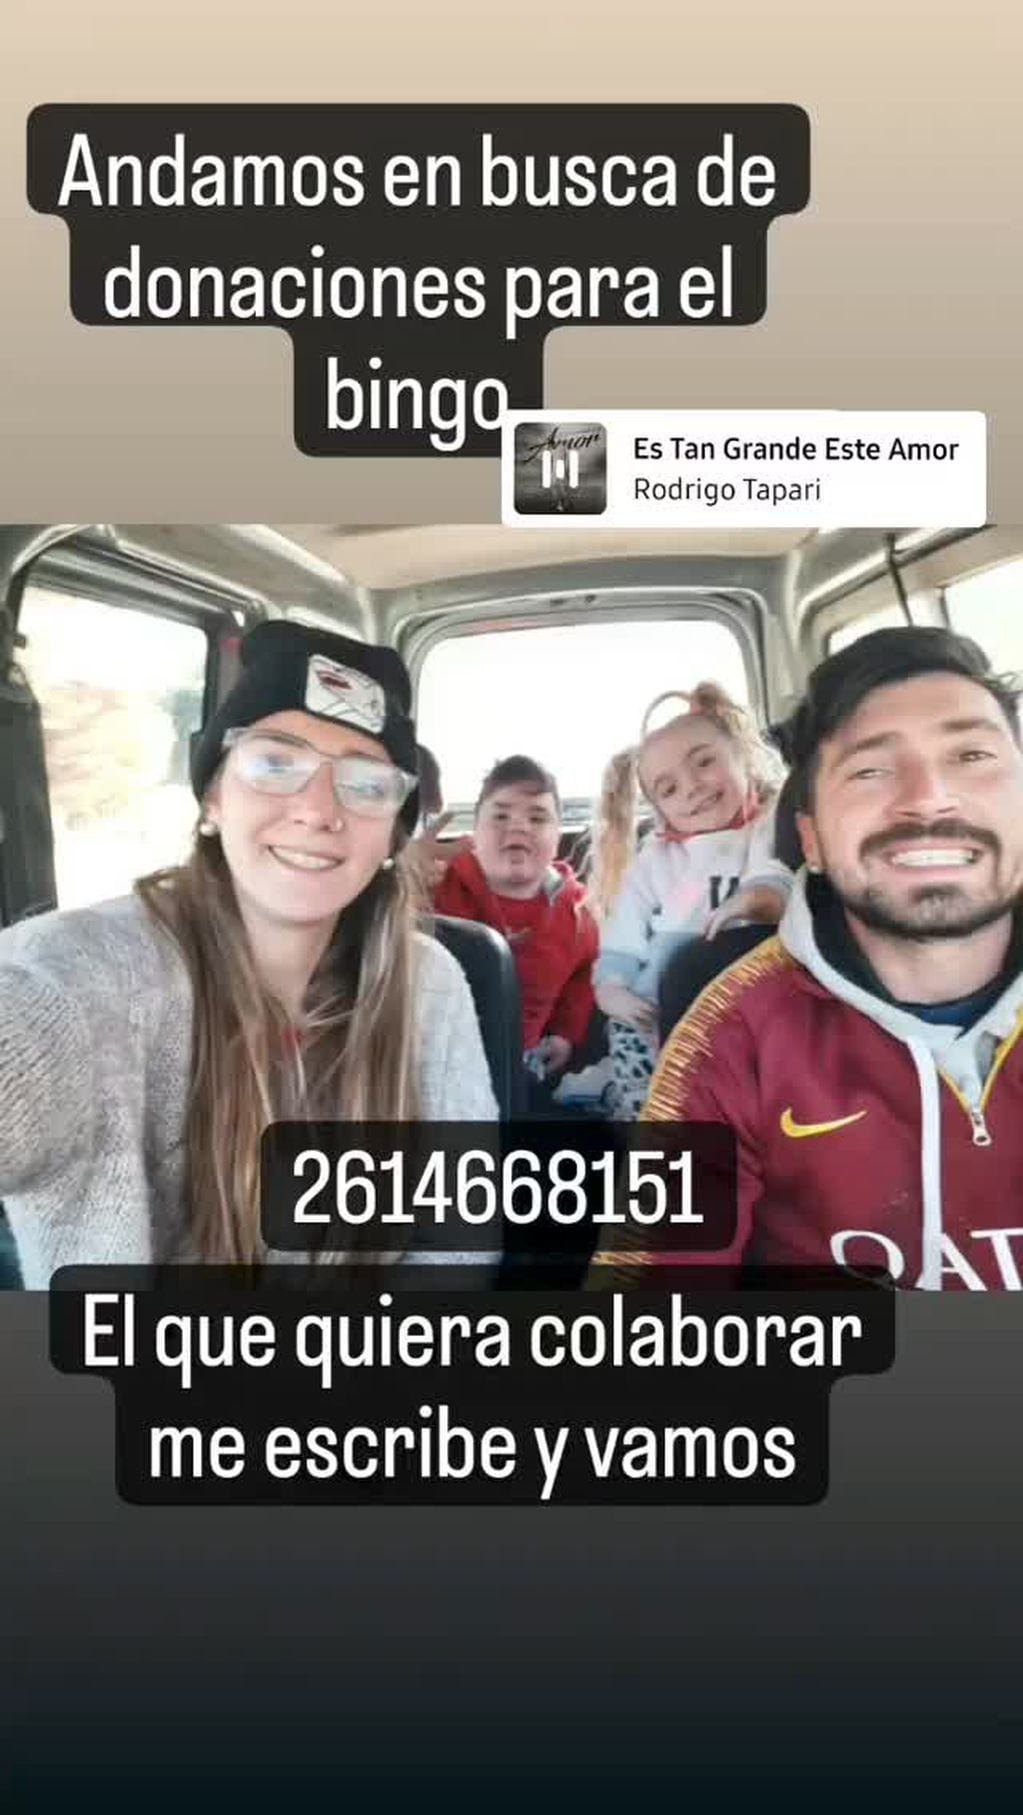 Buscan donaciones para realizar el bingo "Todos por Juanita"